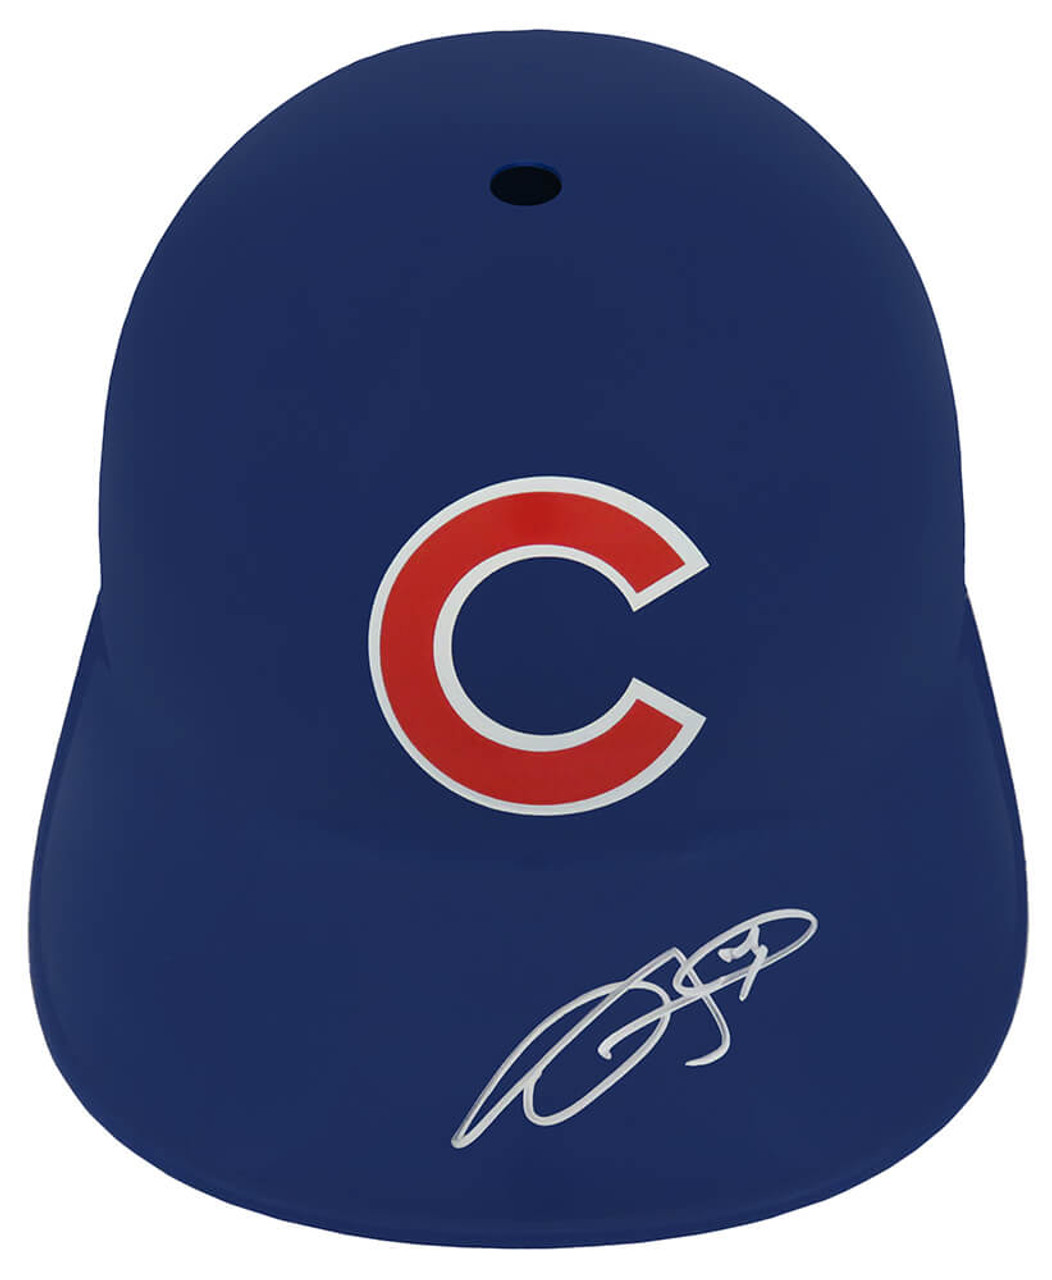 Dexter Fowler Signed Chicago Cubs Souvenir Replica Baseball Batting Helmet  - Schwartz Authenticated